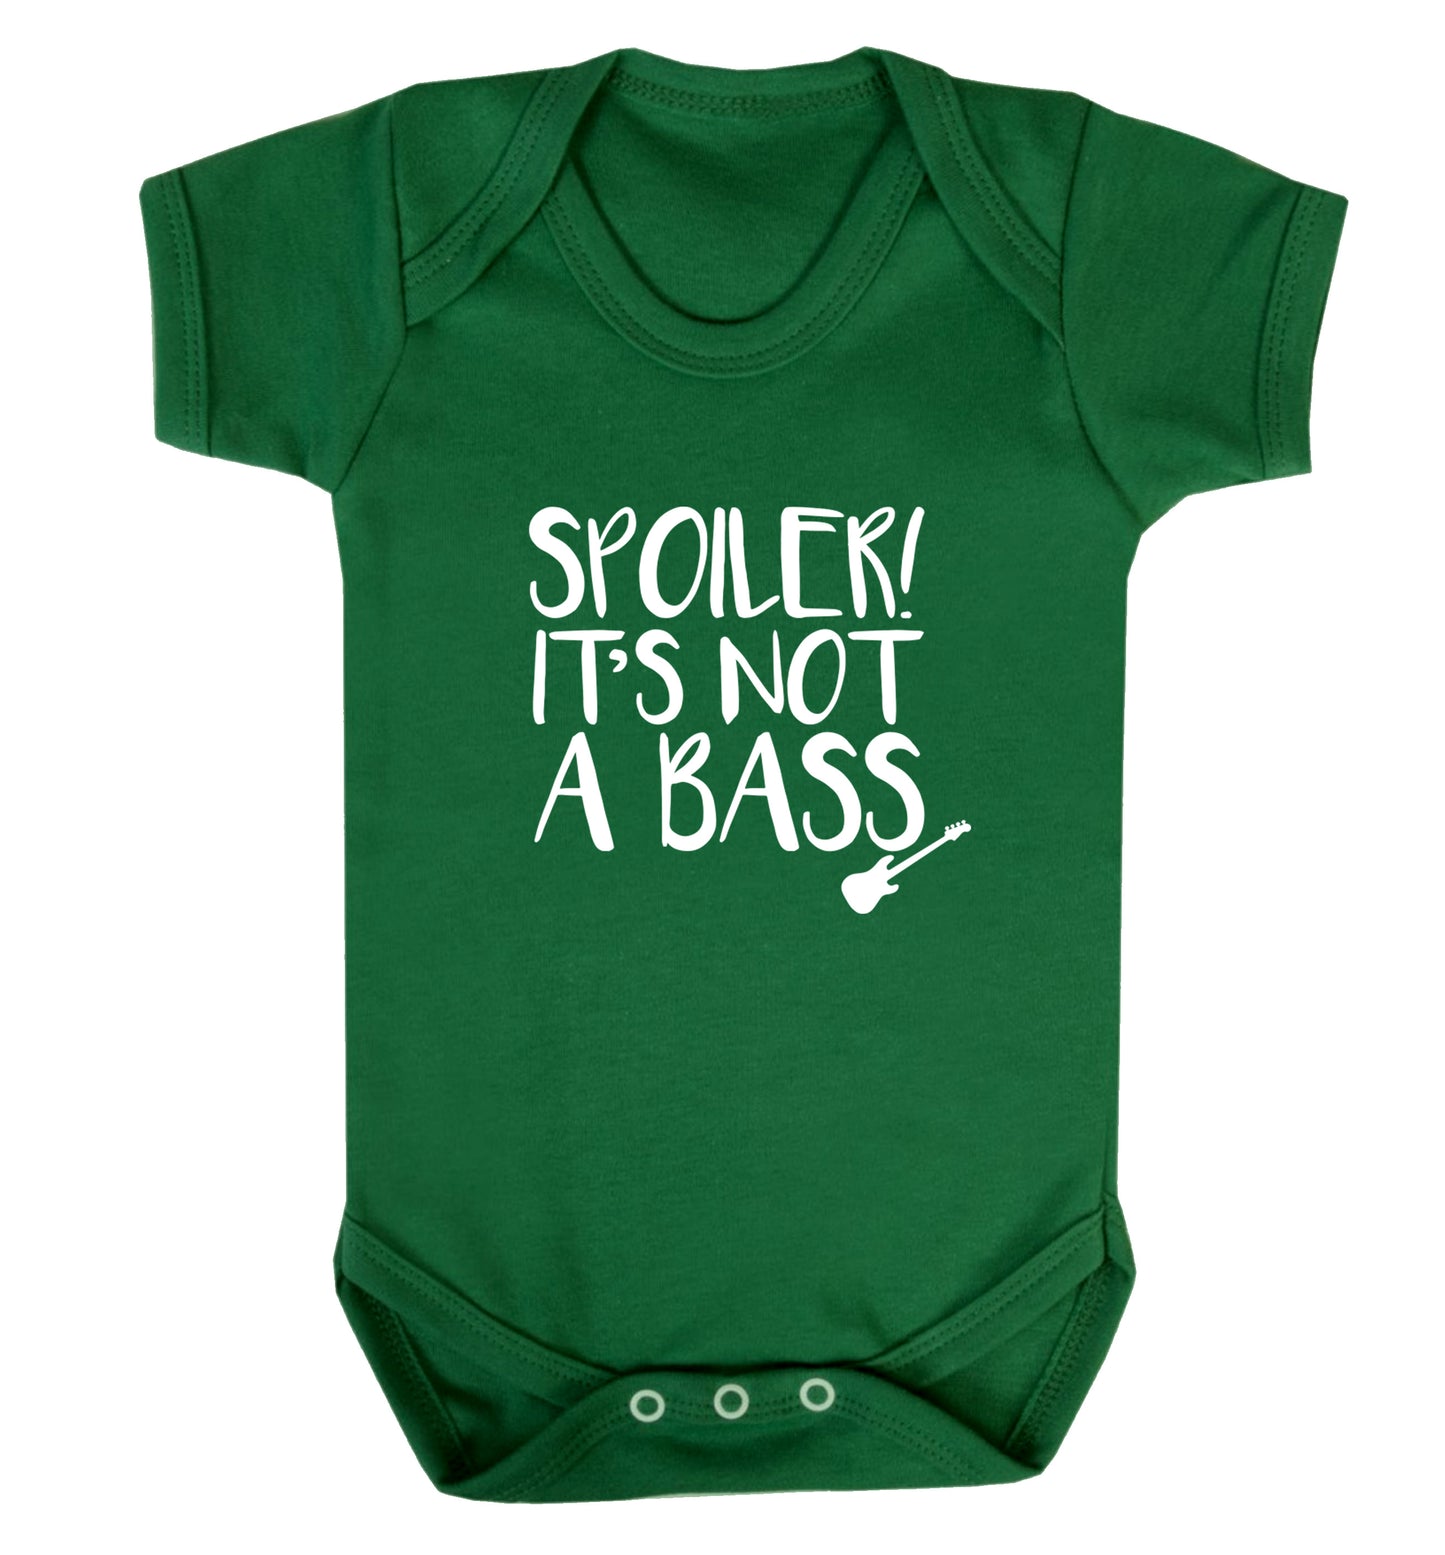 Spoiler it's not a bass Baby Vest green 18-24 months